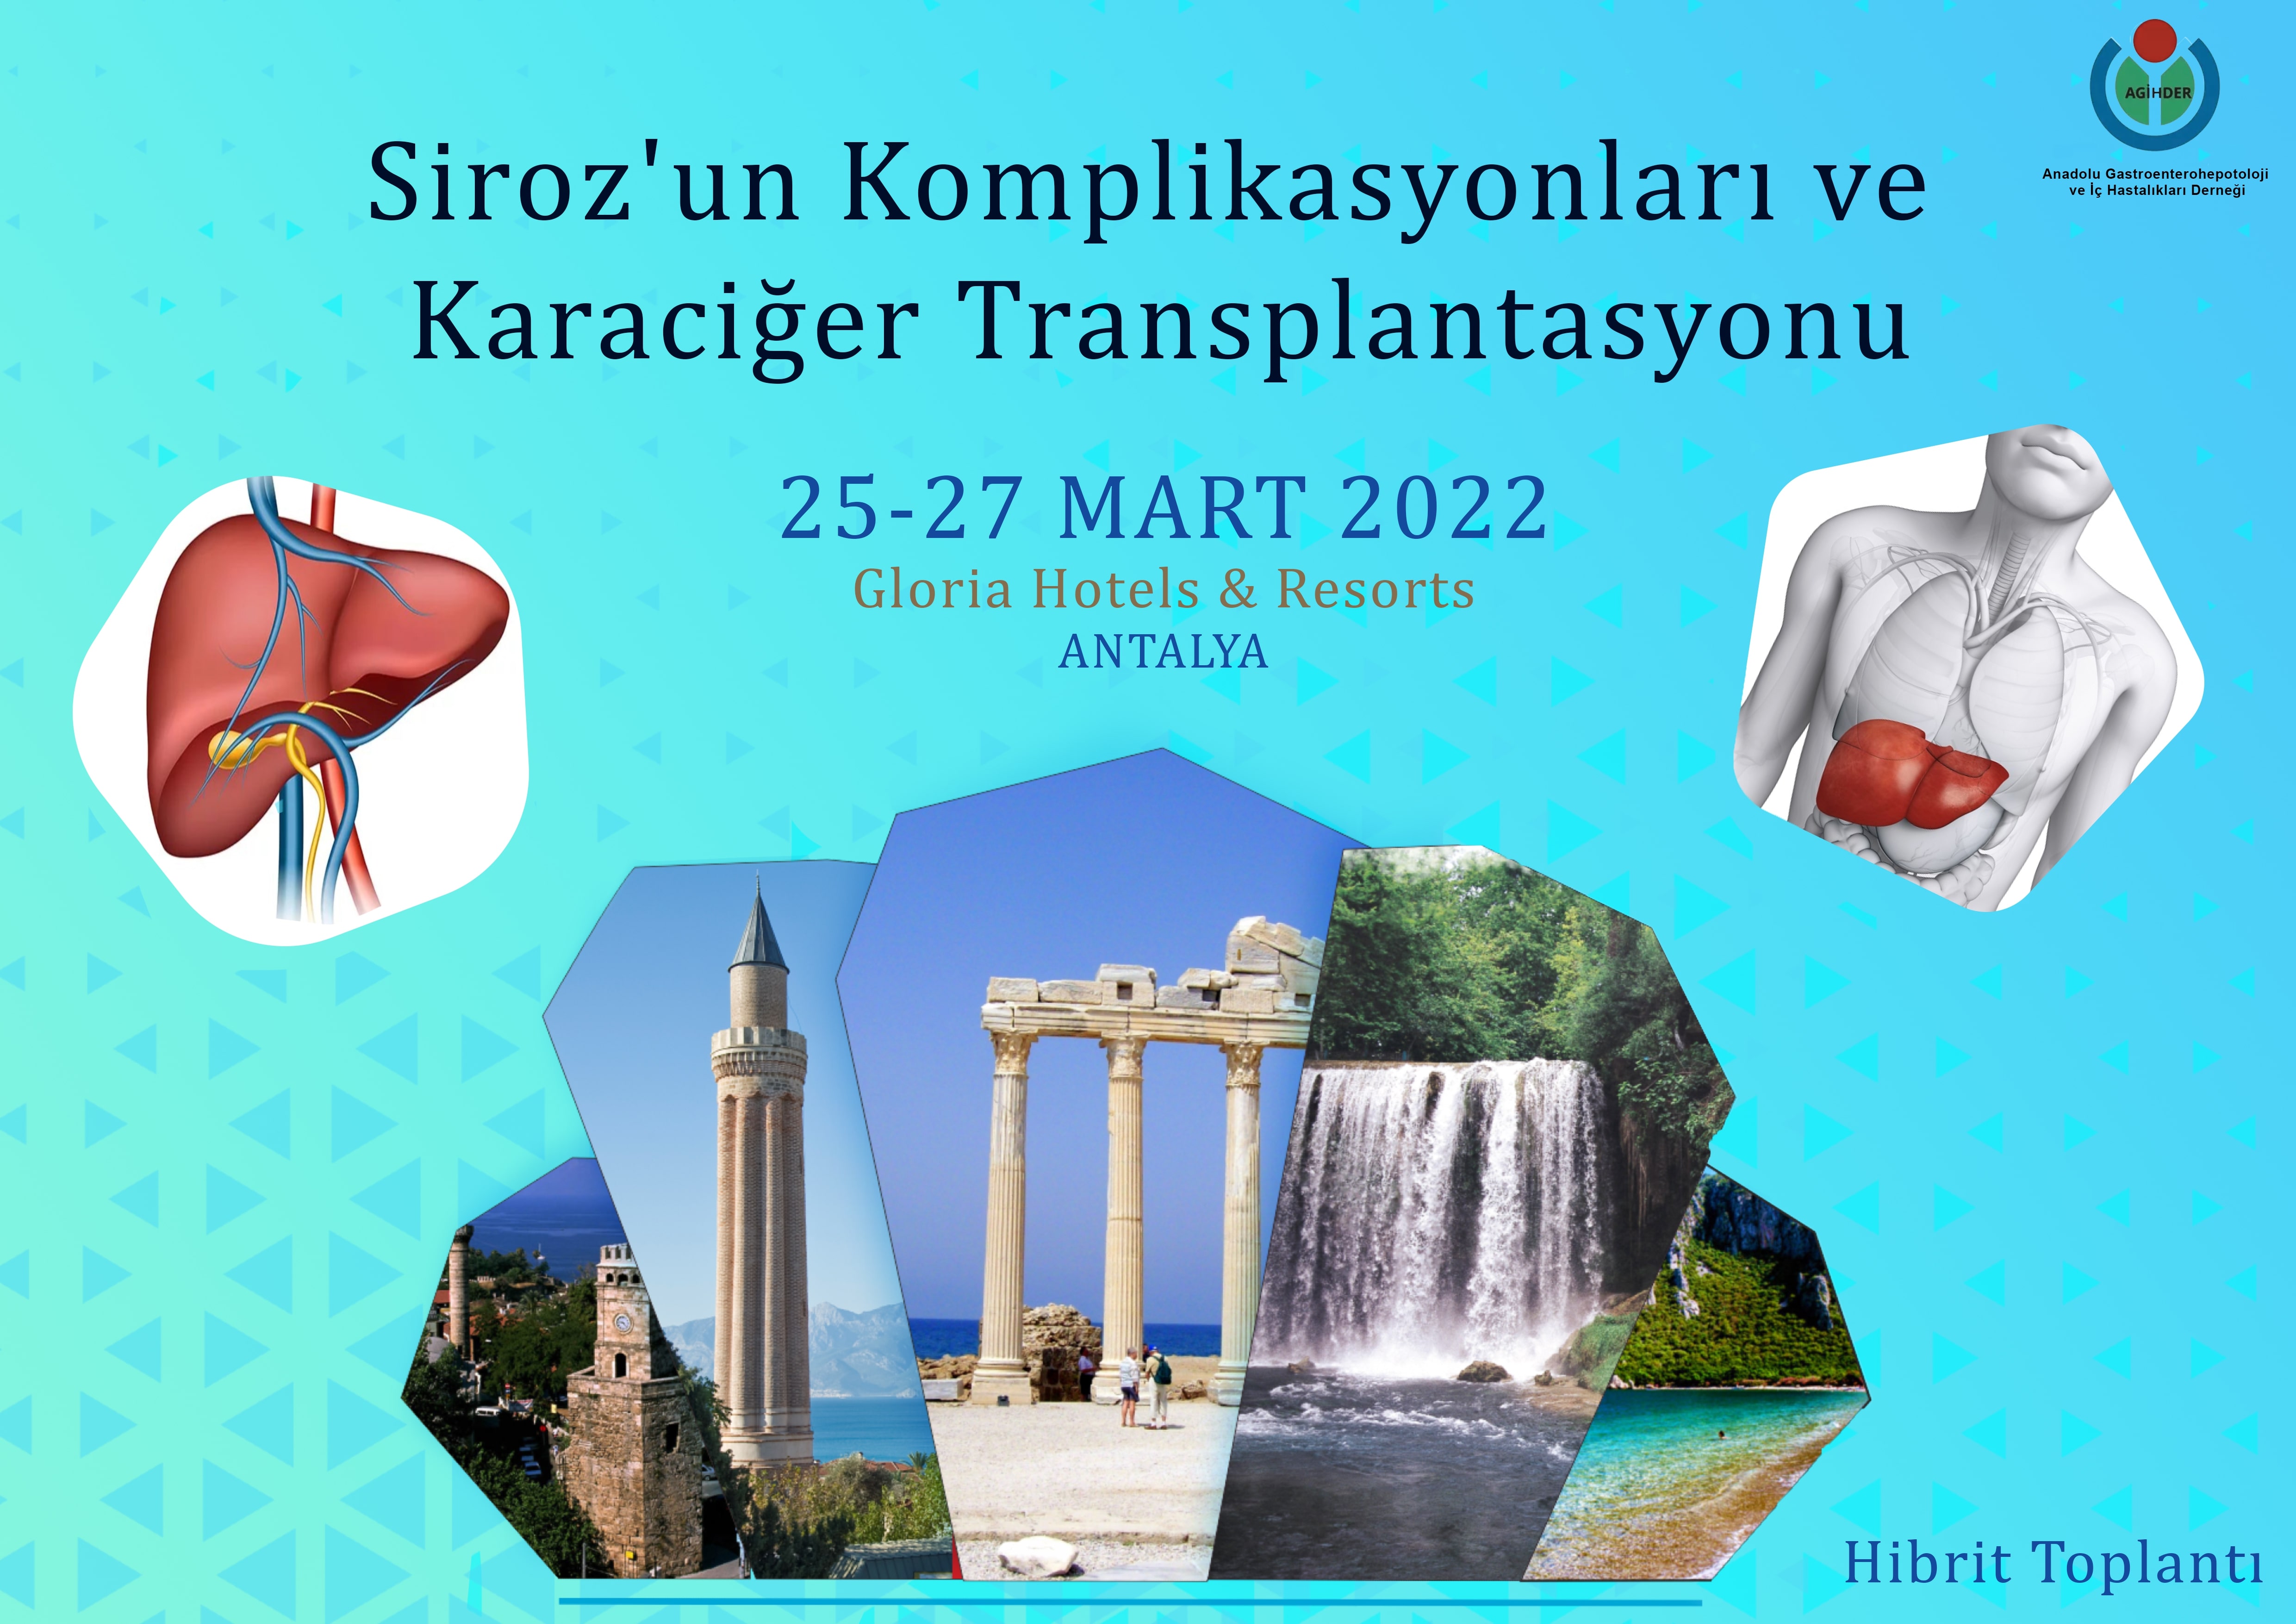 Siroz'un Komplikasyonları ve Karaciğer Transplantasyonu Antalya